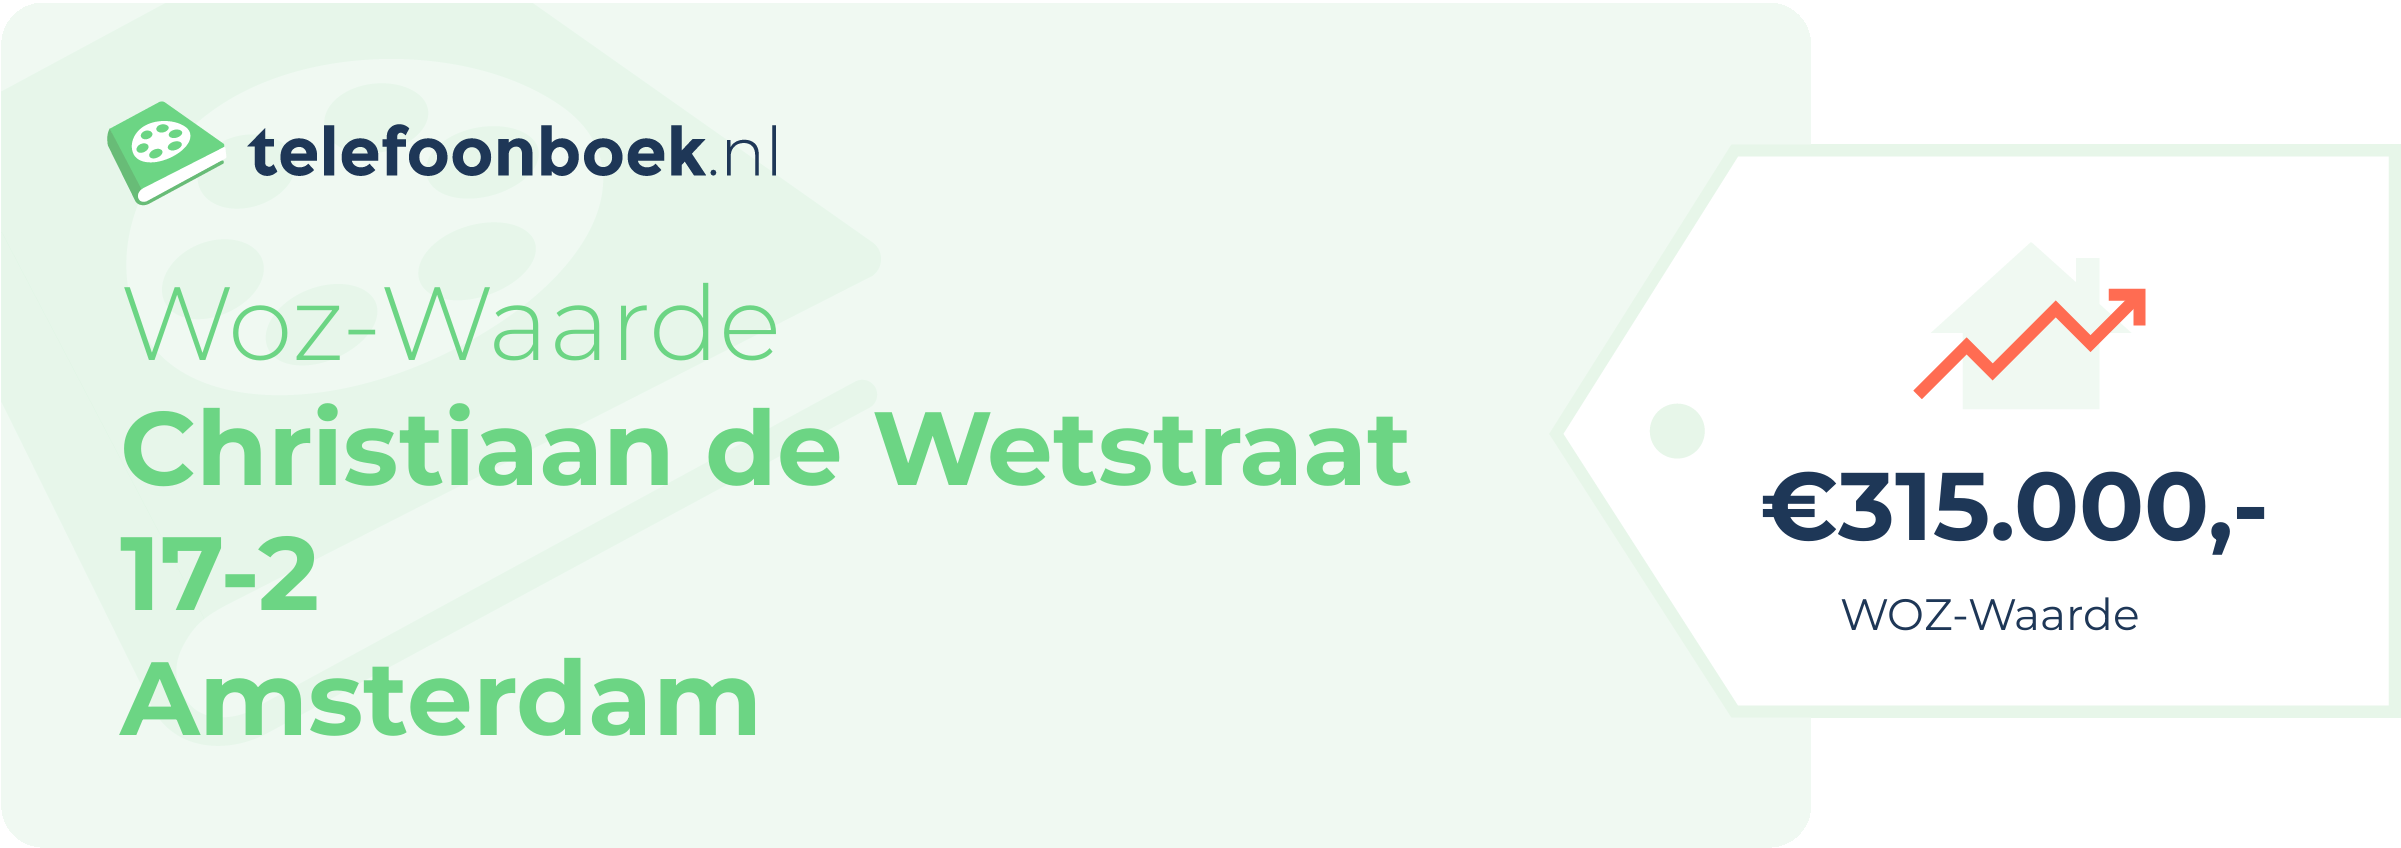 WOZ-waarde Christiaan De Wetstraat 17-2 Amsterdam